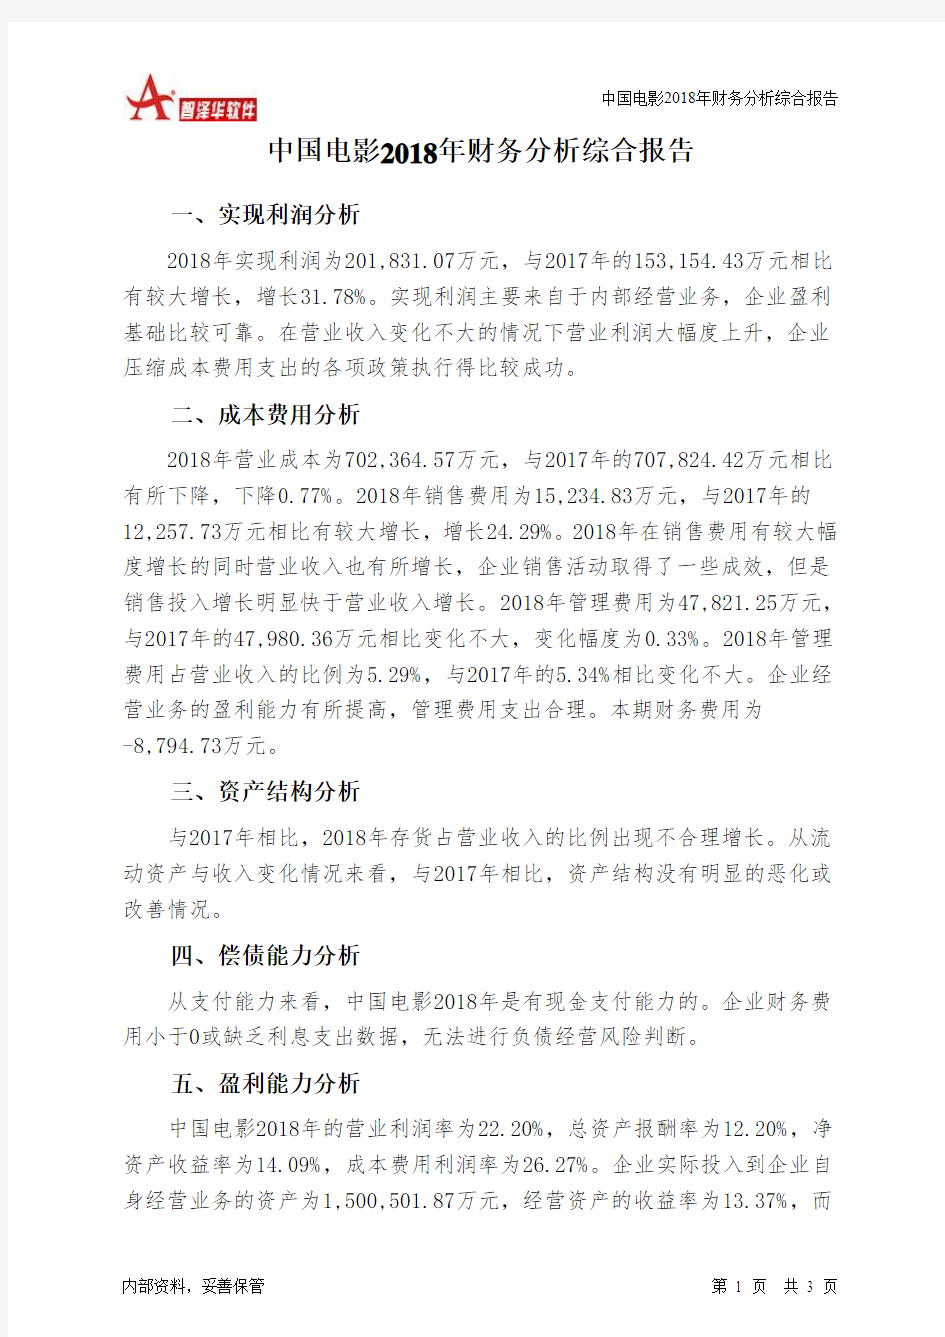 中国电影2018年财务分析结论报告-智泽华